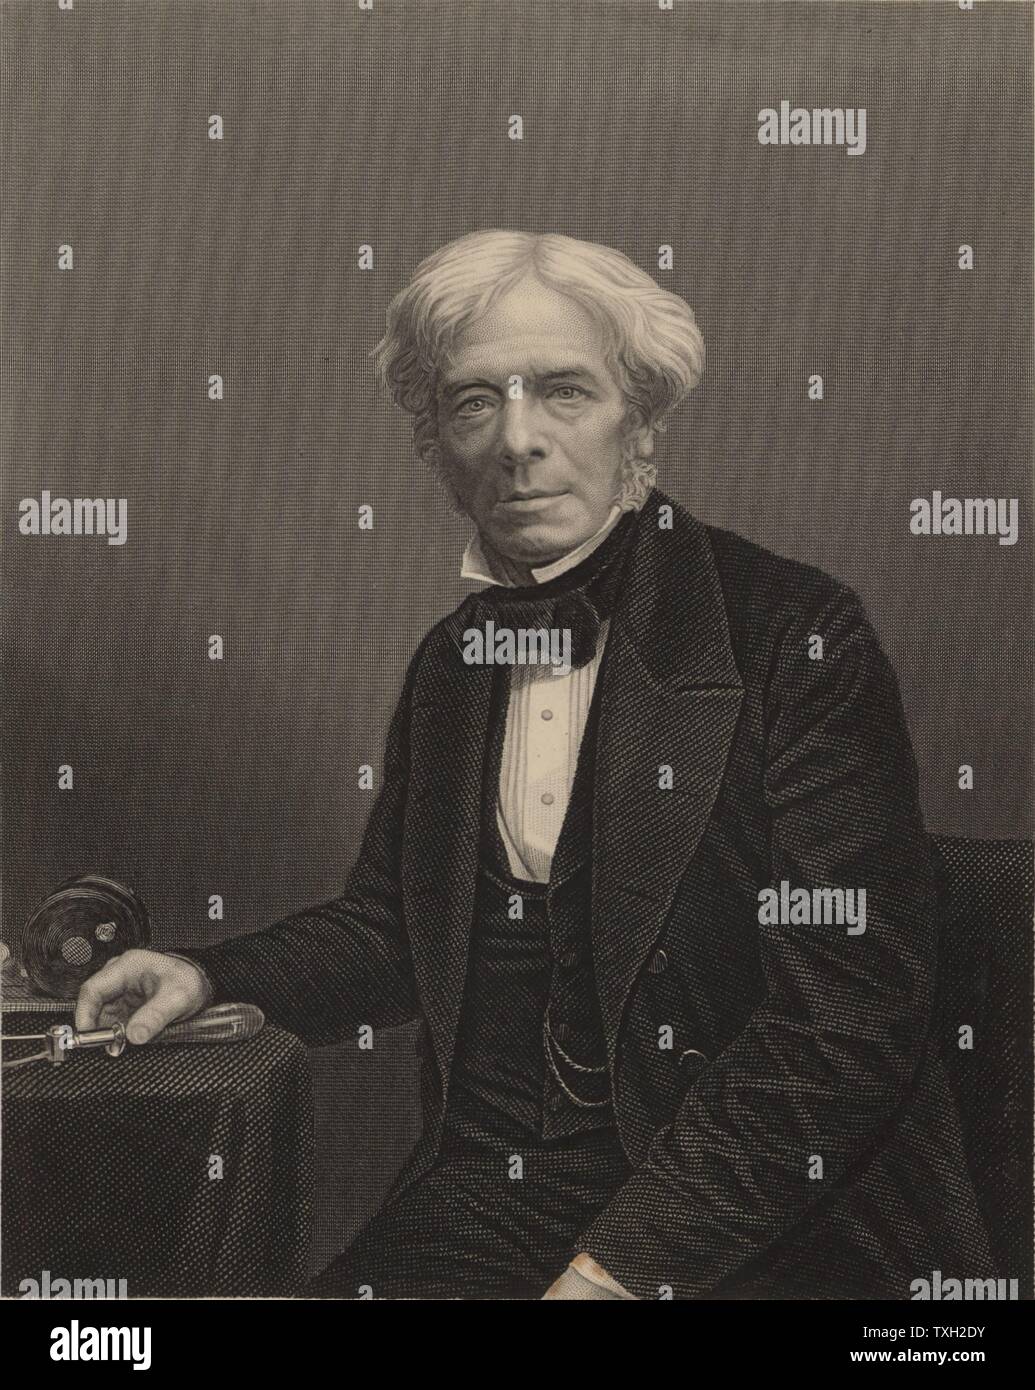 Michael Faraday (1791-1867) englischer Chemiker und Physiker. Im Jahre 1813 wurde Laboratory Assistant Humphry Davy an der Royal Institution in London. Im Jahre 1833 folgte er Davy als Professor der Chemie an der RI. Gravur. Britische Stockfoto